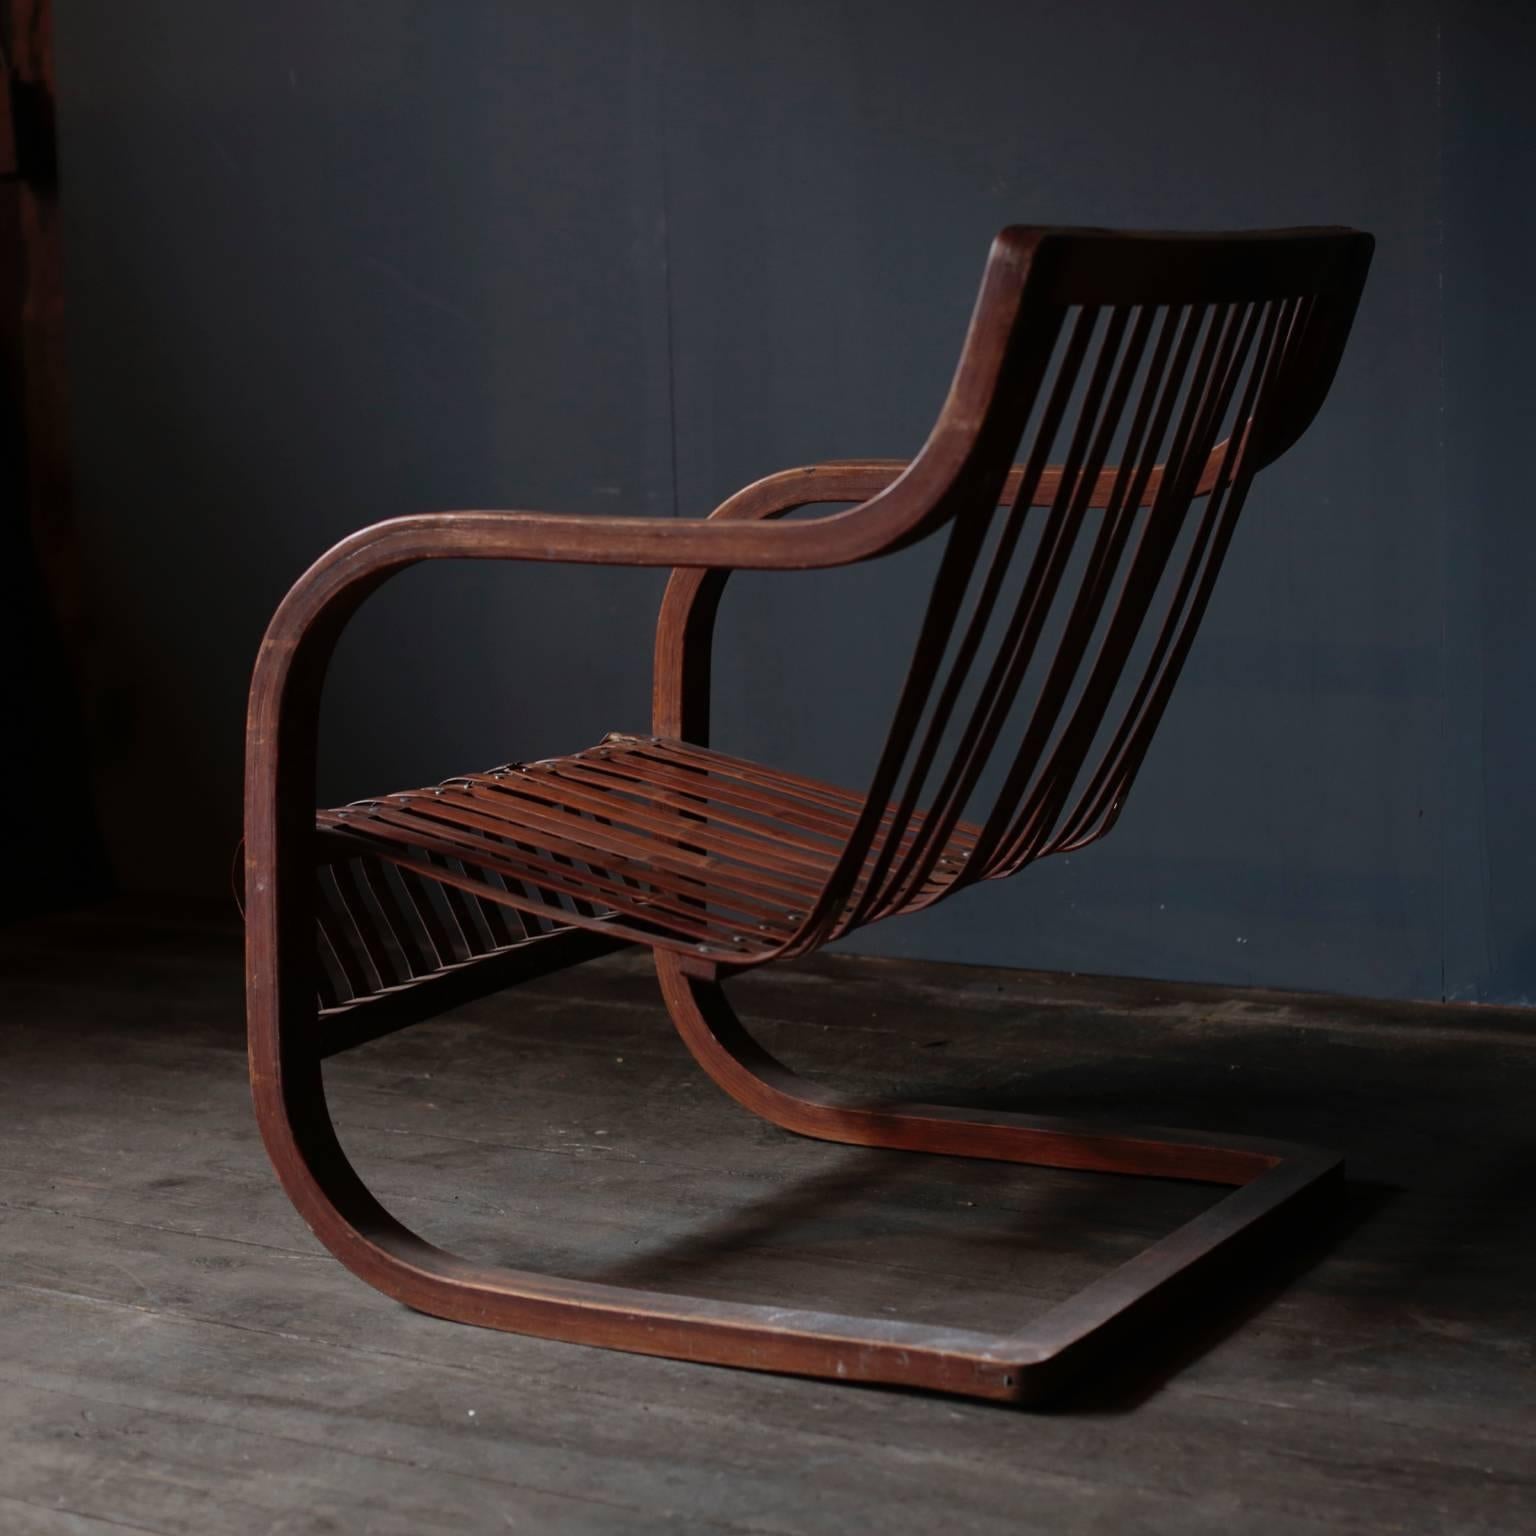 Japanese Bamboo Chair by Ubunji Kidokoro